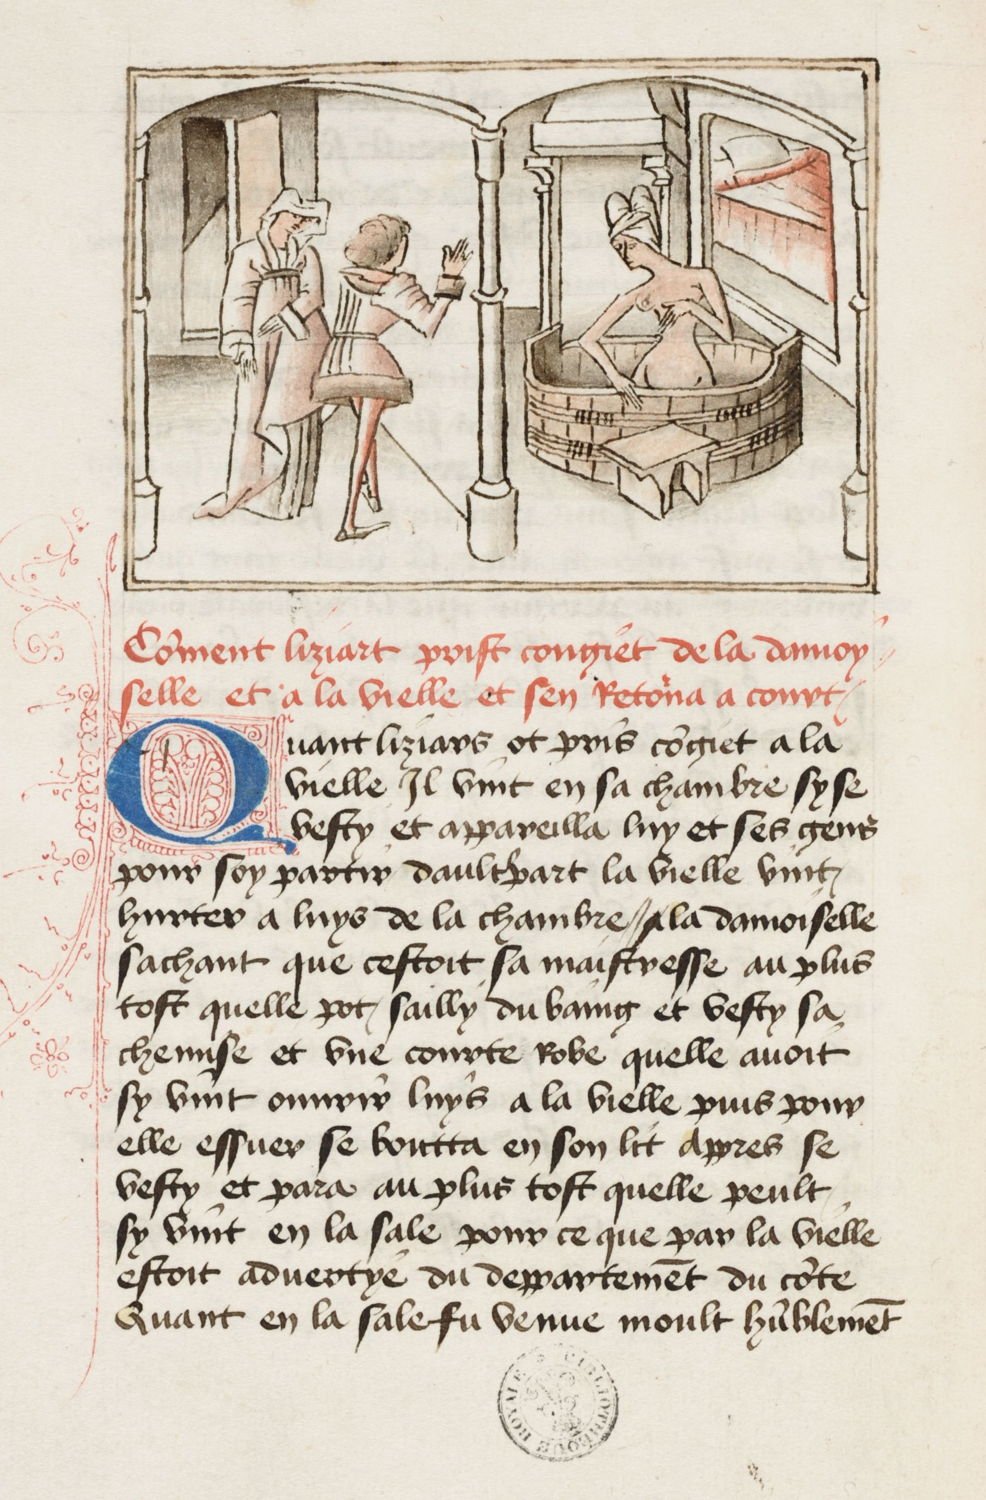 Liziart épie Euriant dans son bain
miniature du Maître de Wavrin dans le Roman de Gérard de Nevers
KBR- ms. 9631 – folio 12 verso
